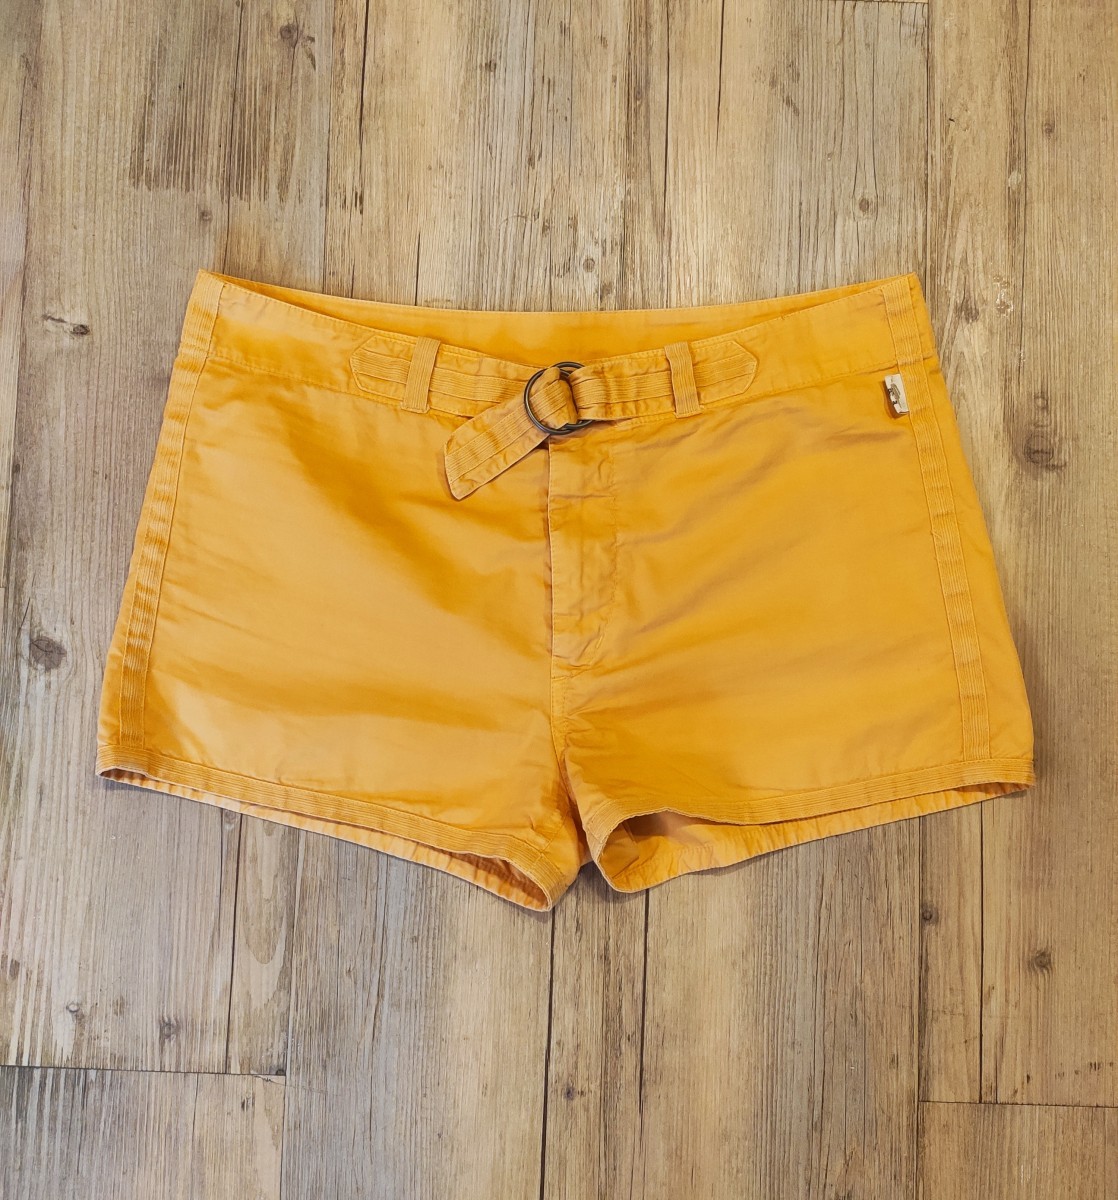 HOLY GRAIL! JPG 1990's peach shorts. - 1